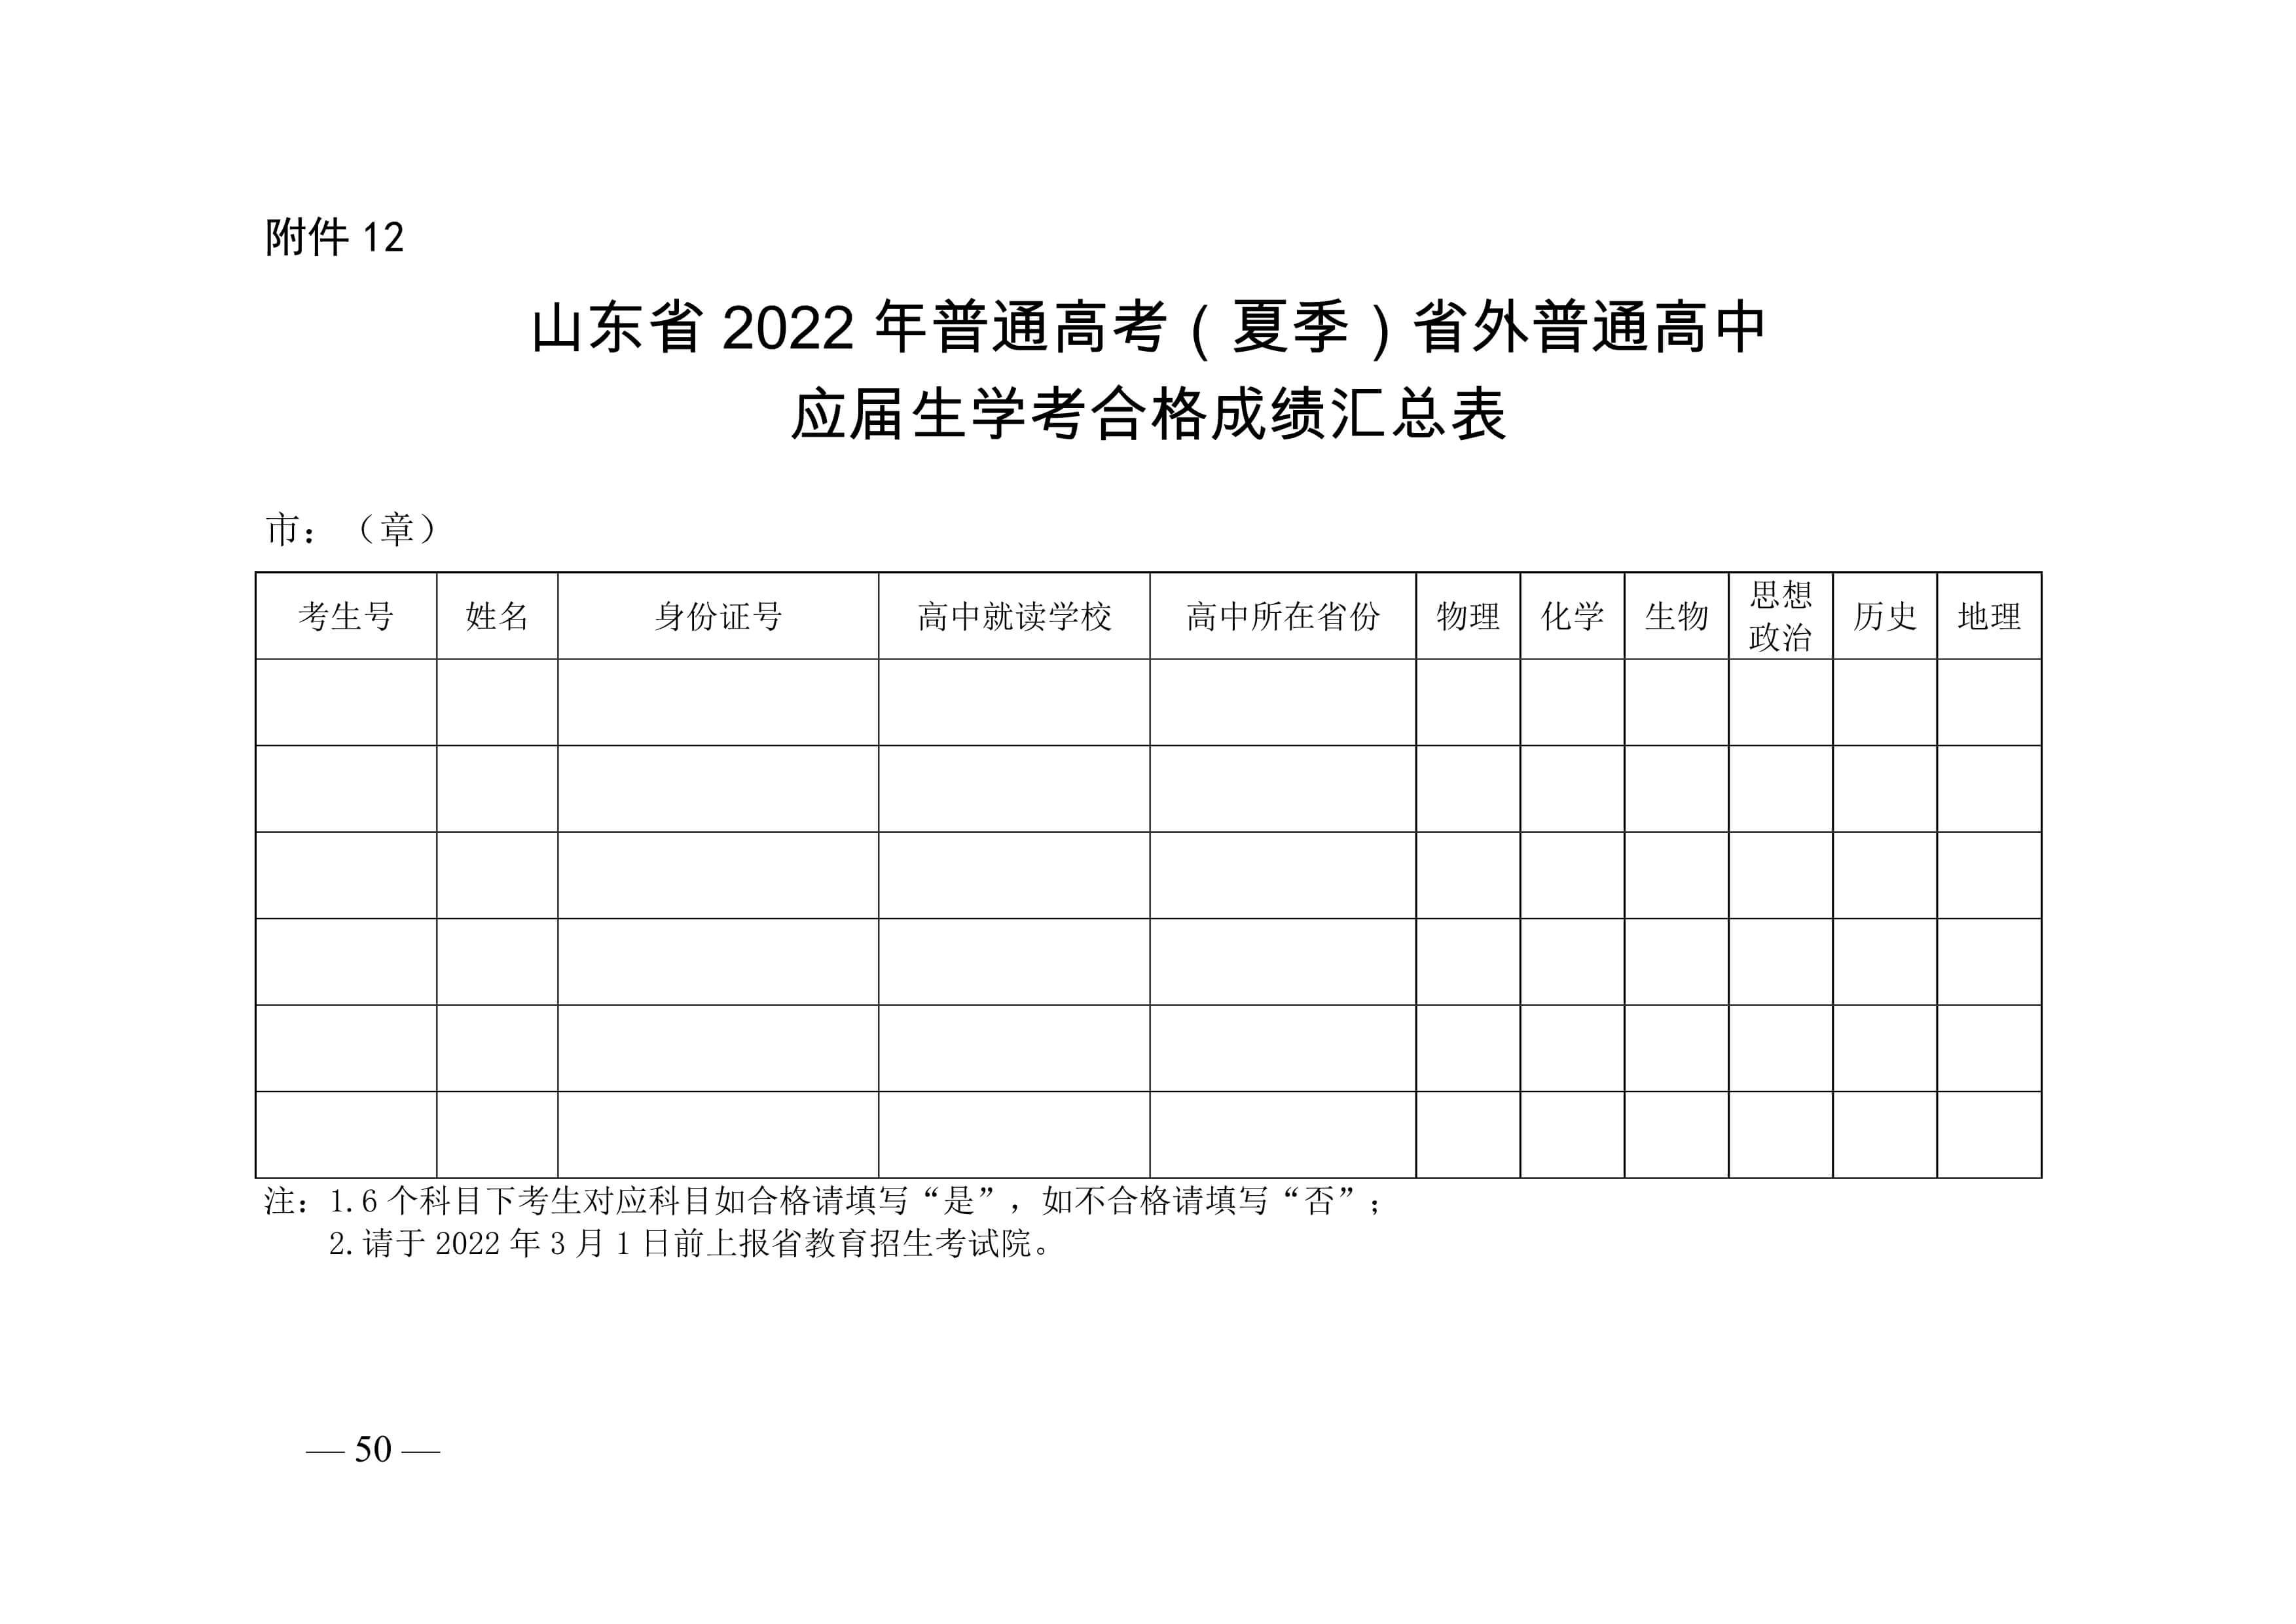 山東省教育招生考試院關于做好山東省2022年普通高等學校招生考試報名工作的通知